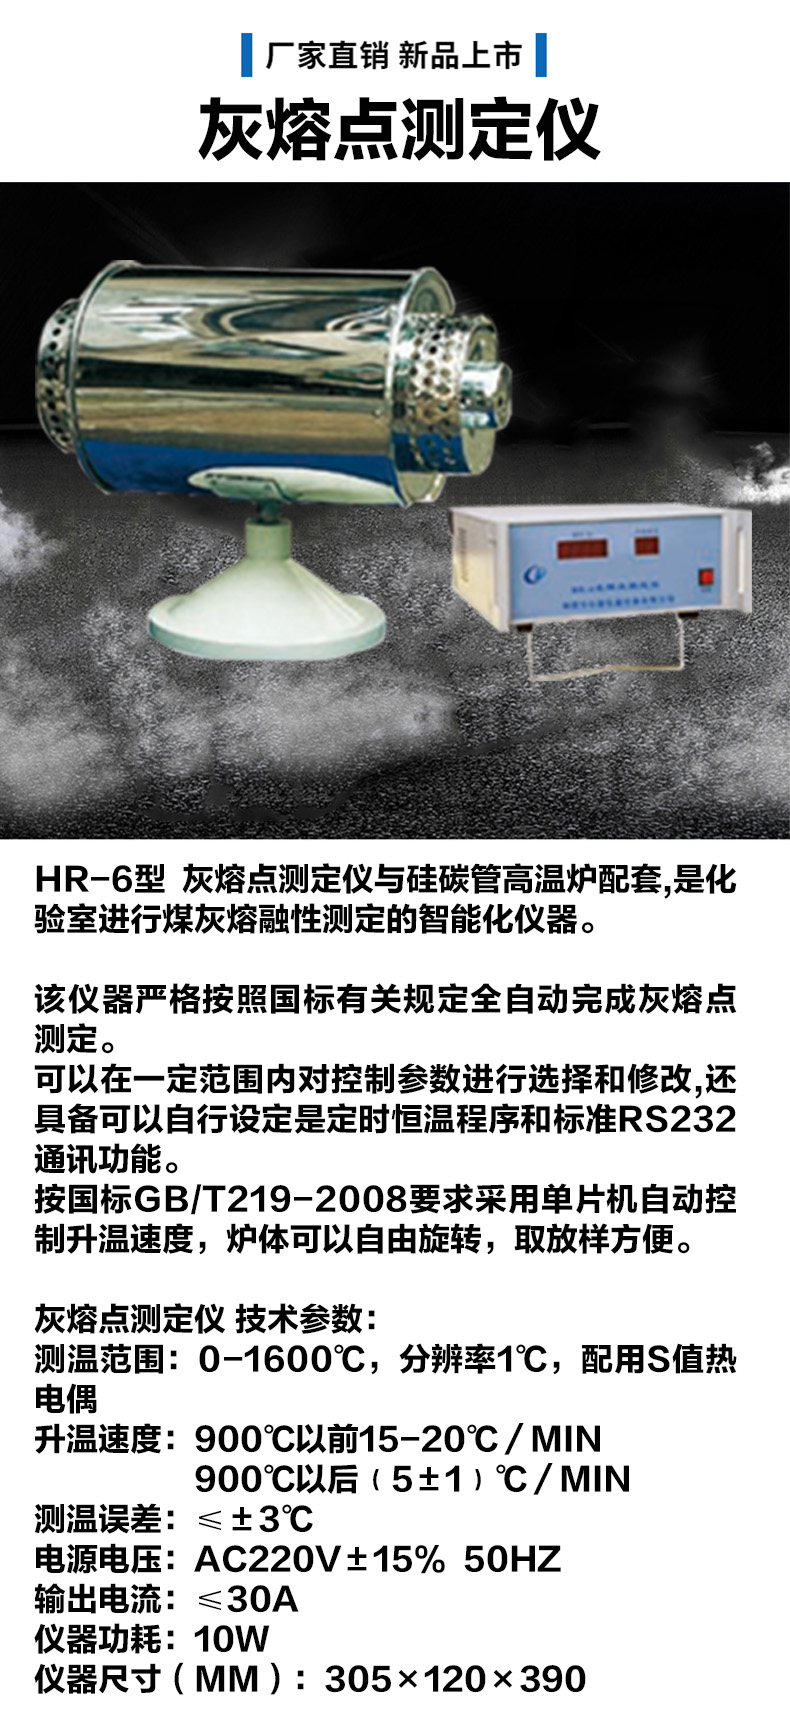 HR-6煤炭灰熔点测定仪 供暖公司热力公司煤炭化验设备 鹤壁创新